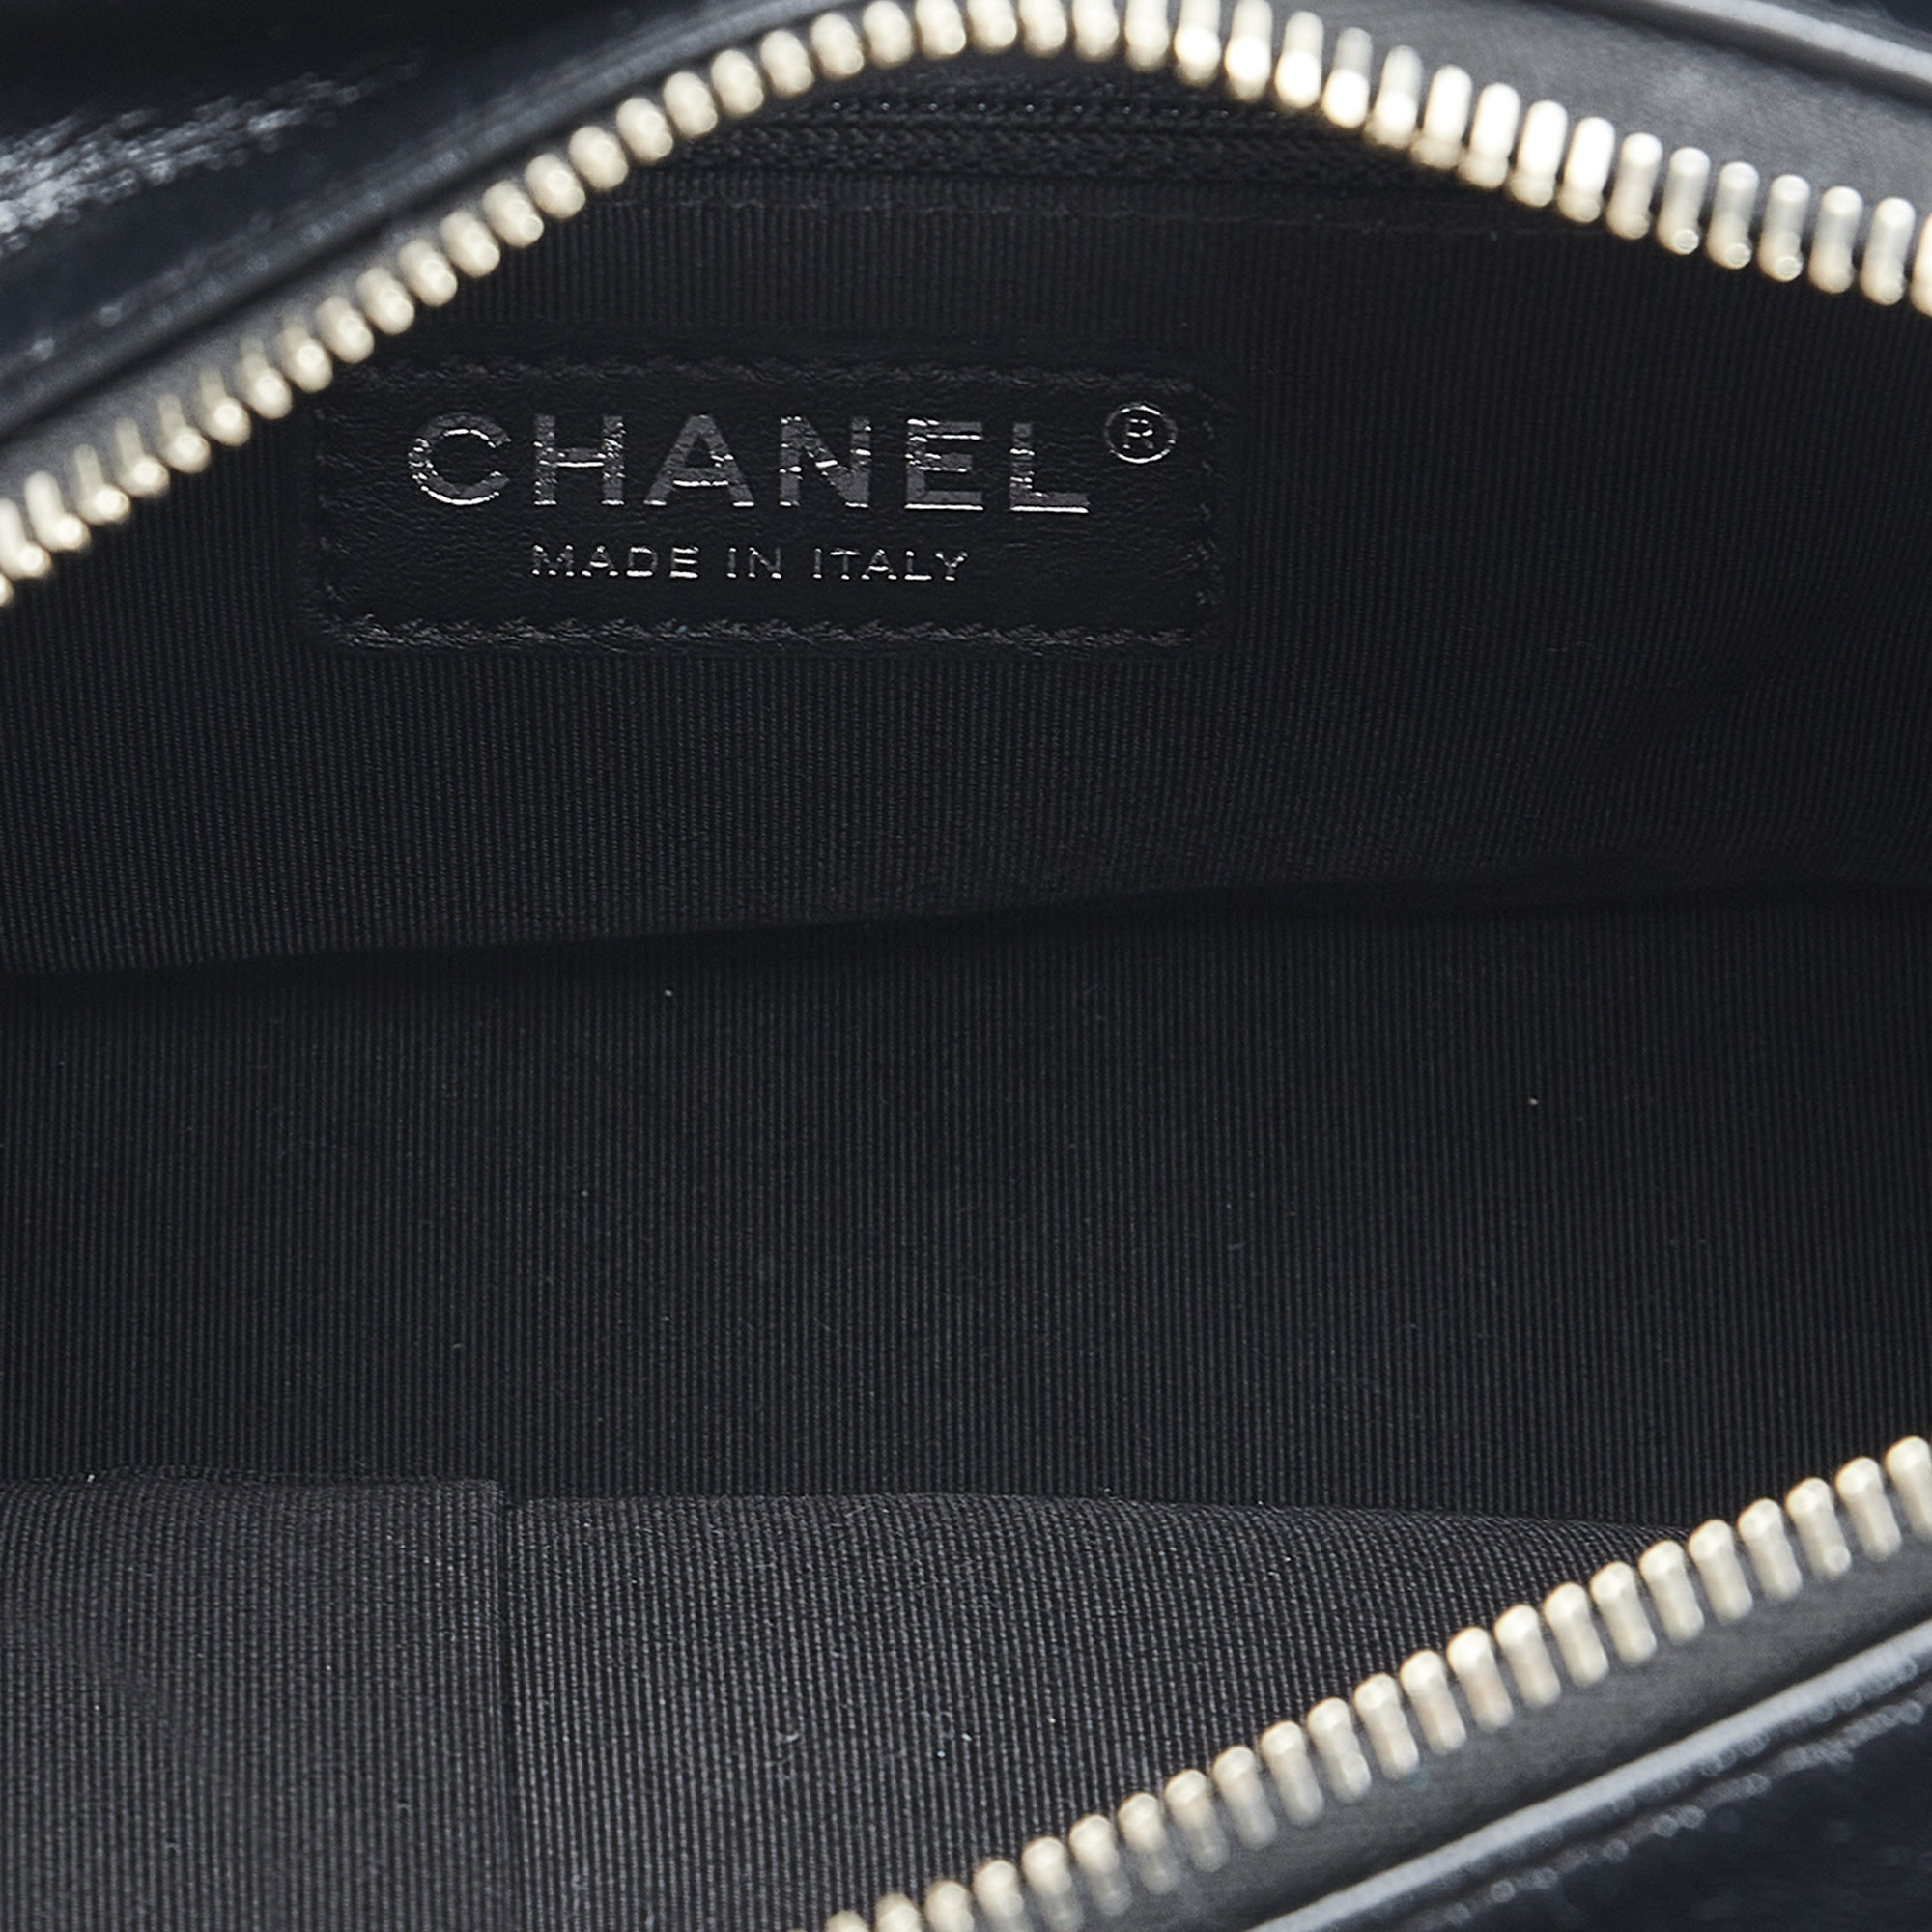 Chanel Black/Gold Gabrielle Shoulder Bag